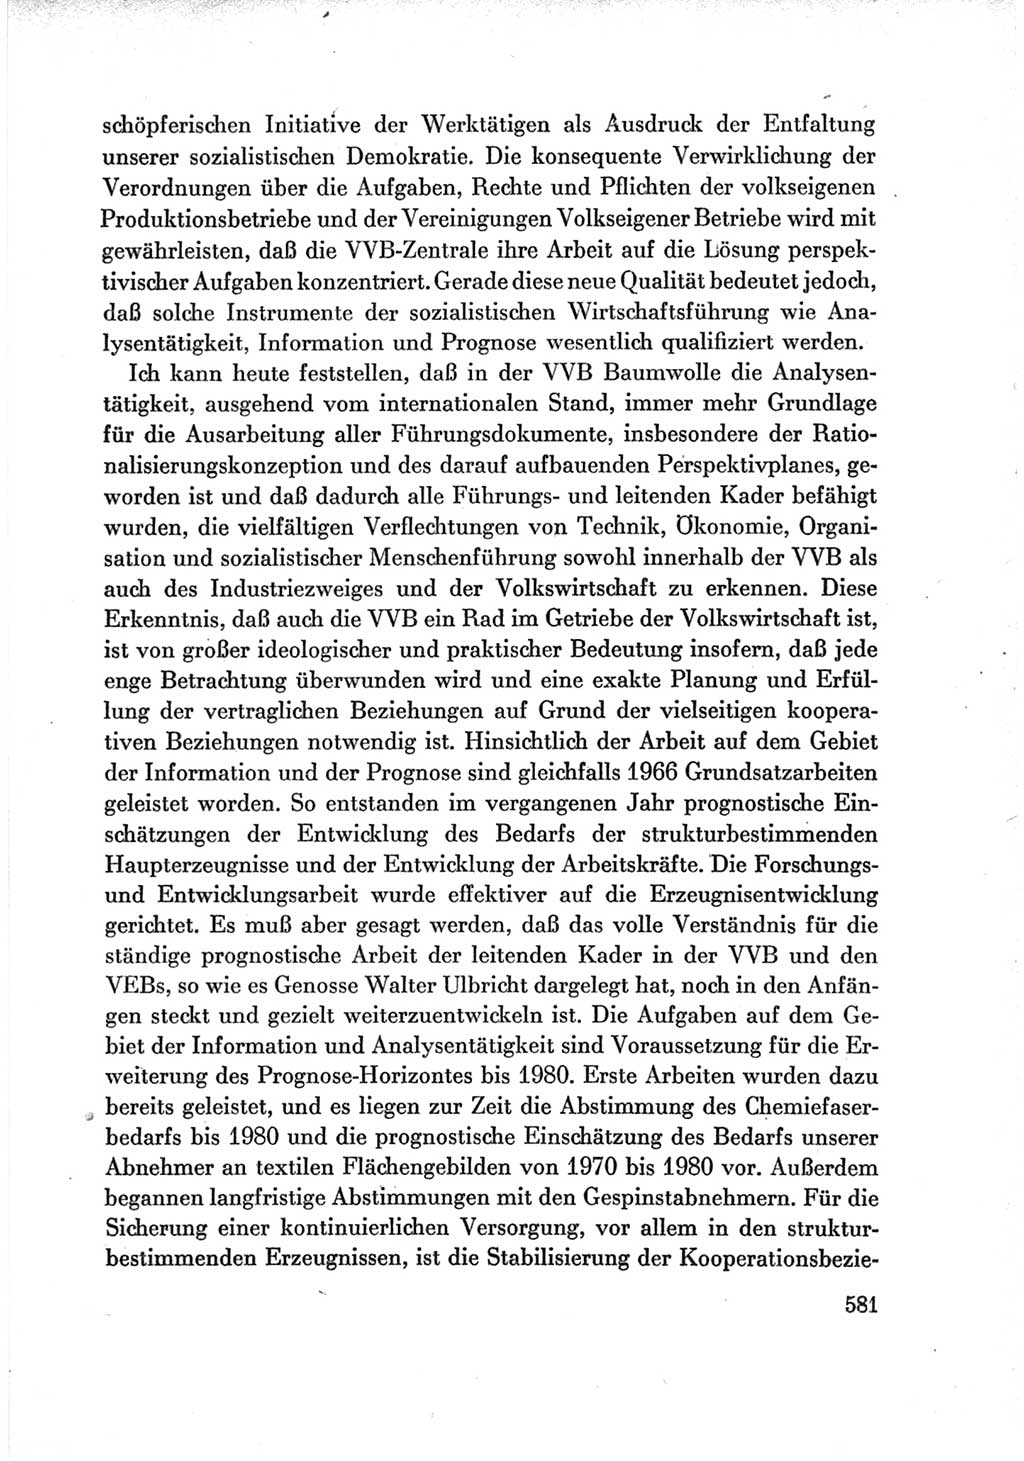 Protokoll der Verhandlungen des Ⅶ. Parteitages der Sozialistischen Einheitspartei Deutschlands (SED) [Deutsche Demokratische Republik (DDR)] 1967, Band Ⅲ, Seite 581 (Prot. Verh. Ⅶ. PT SED DDR 1967, Bd. Ⅲ, S. 581)